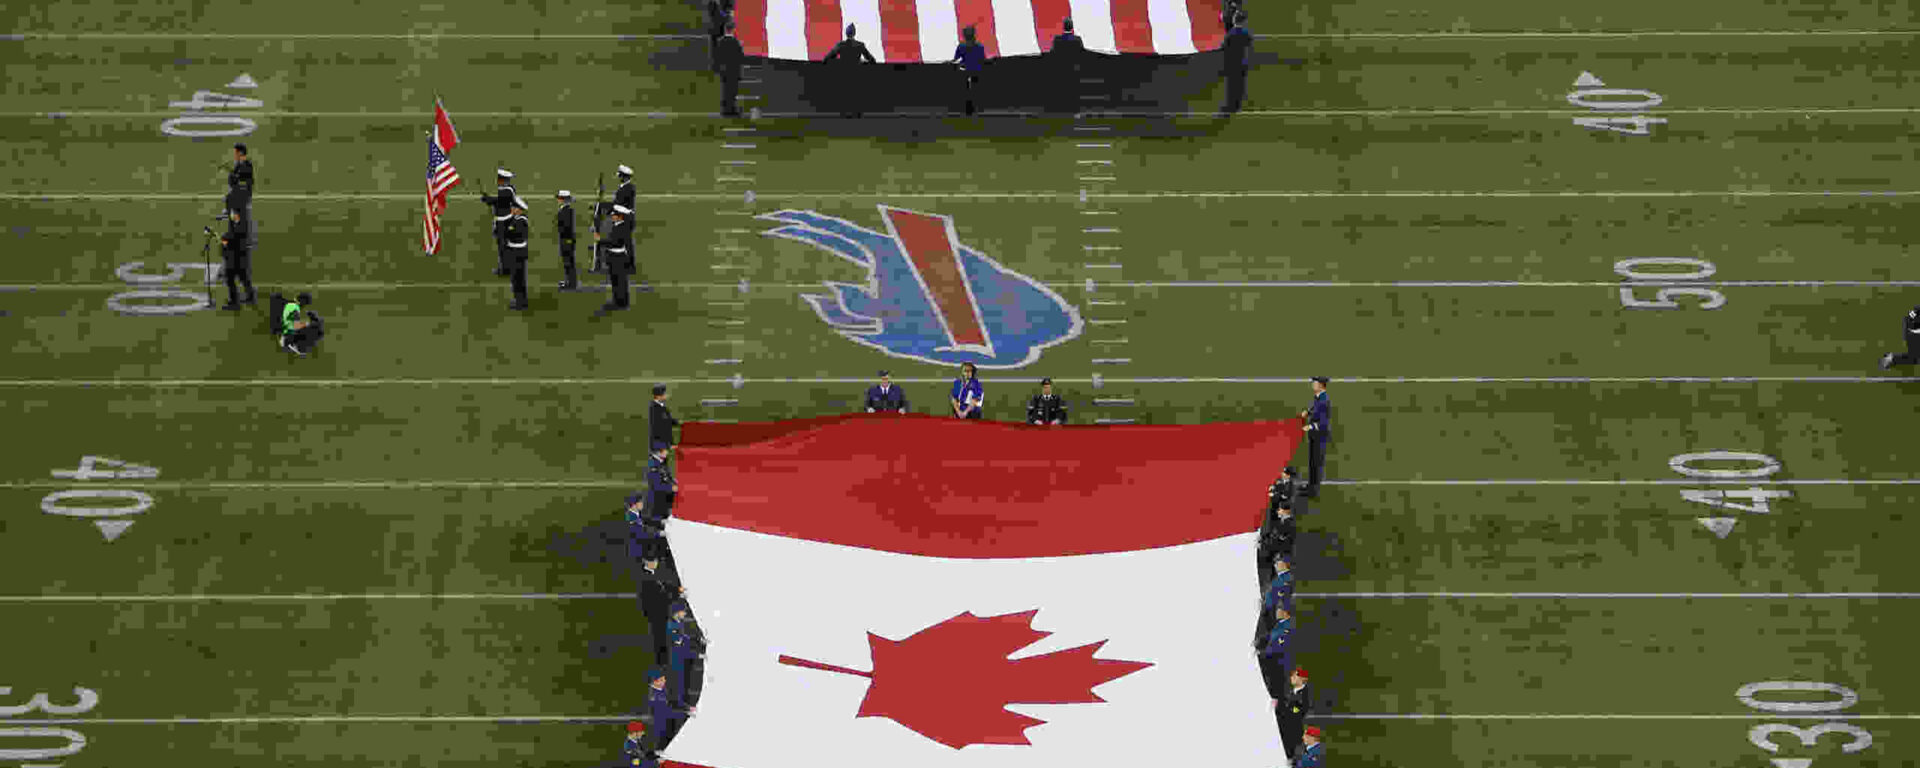 Американските и канадските знамена се разгърнаха по време на игра на НФЛ